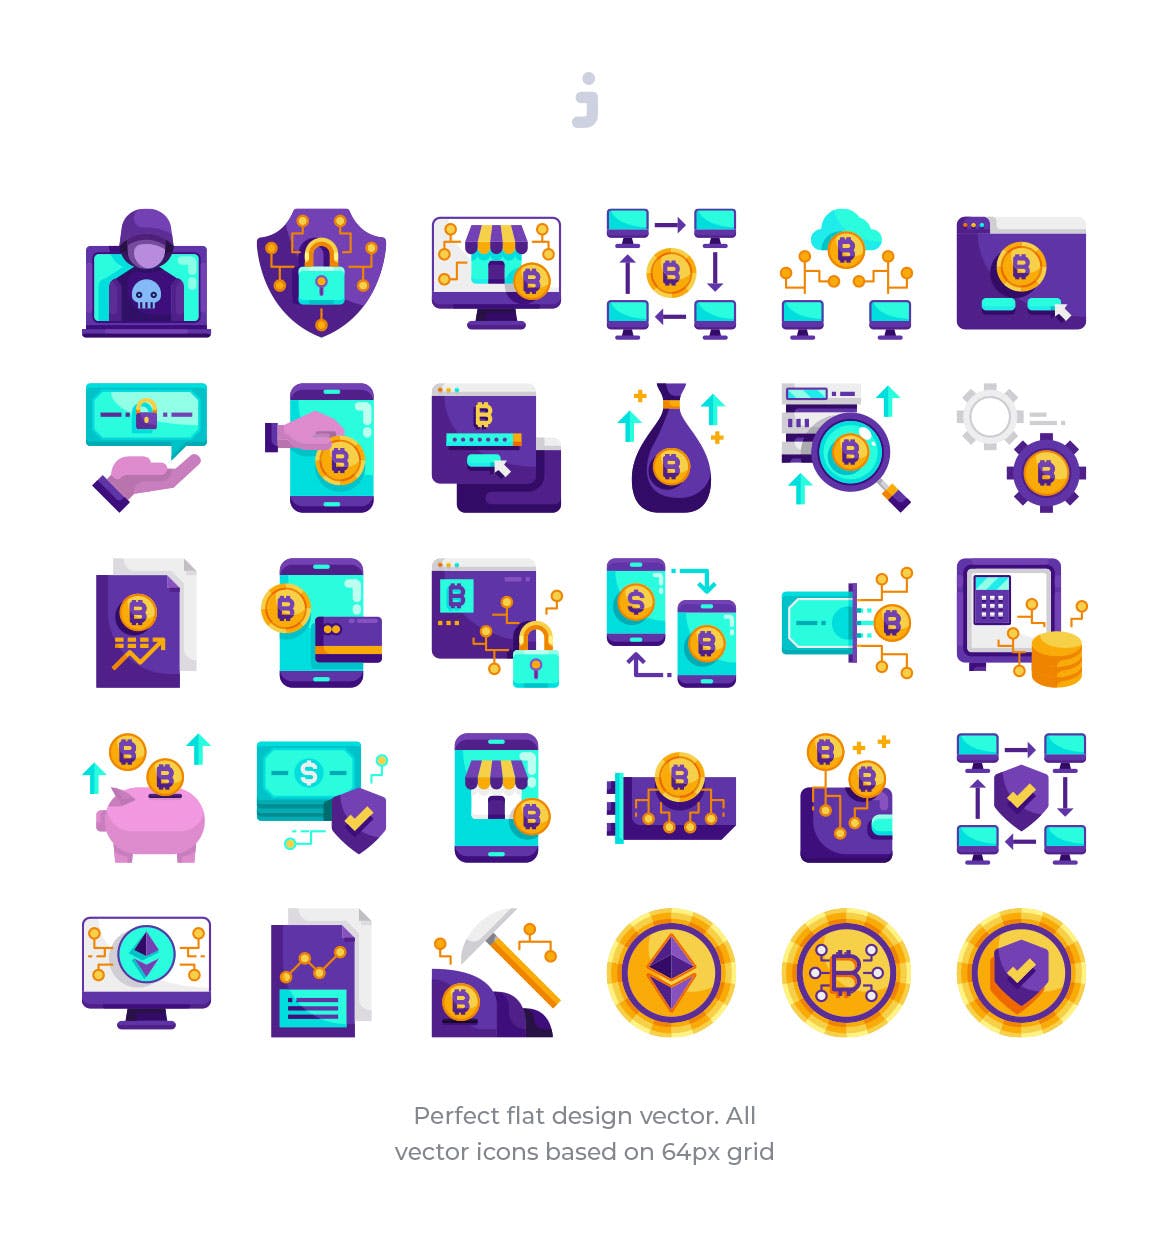 30枚加密货币主题扁平化矢量图标 30 Cryptocurrency Icons – Flat插图(1)